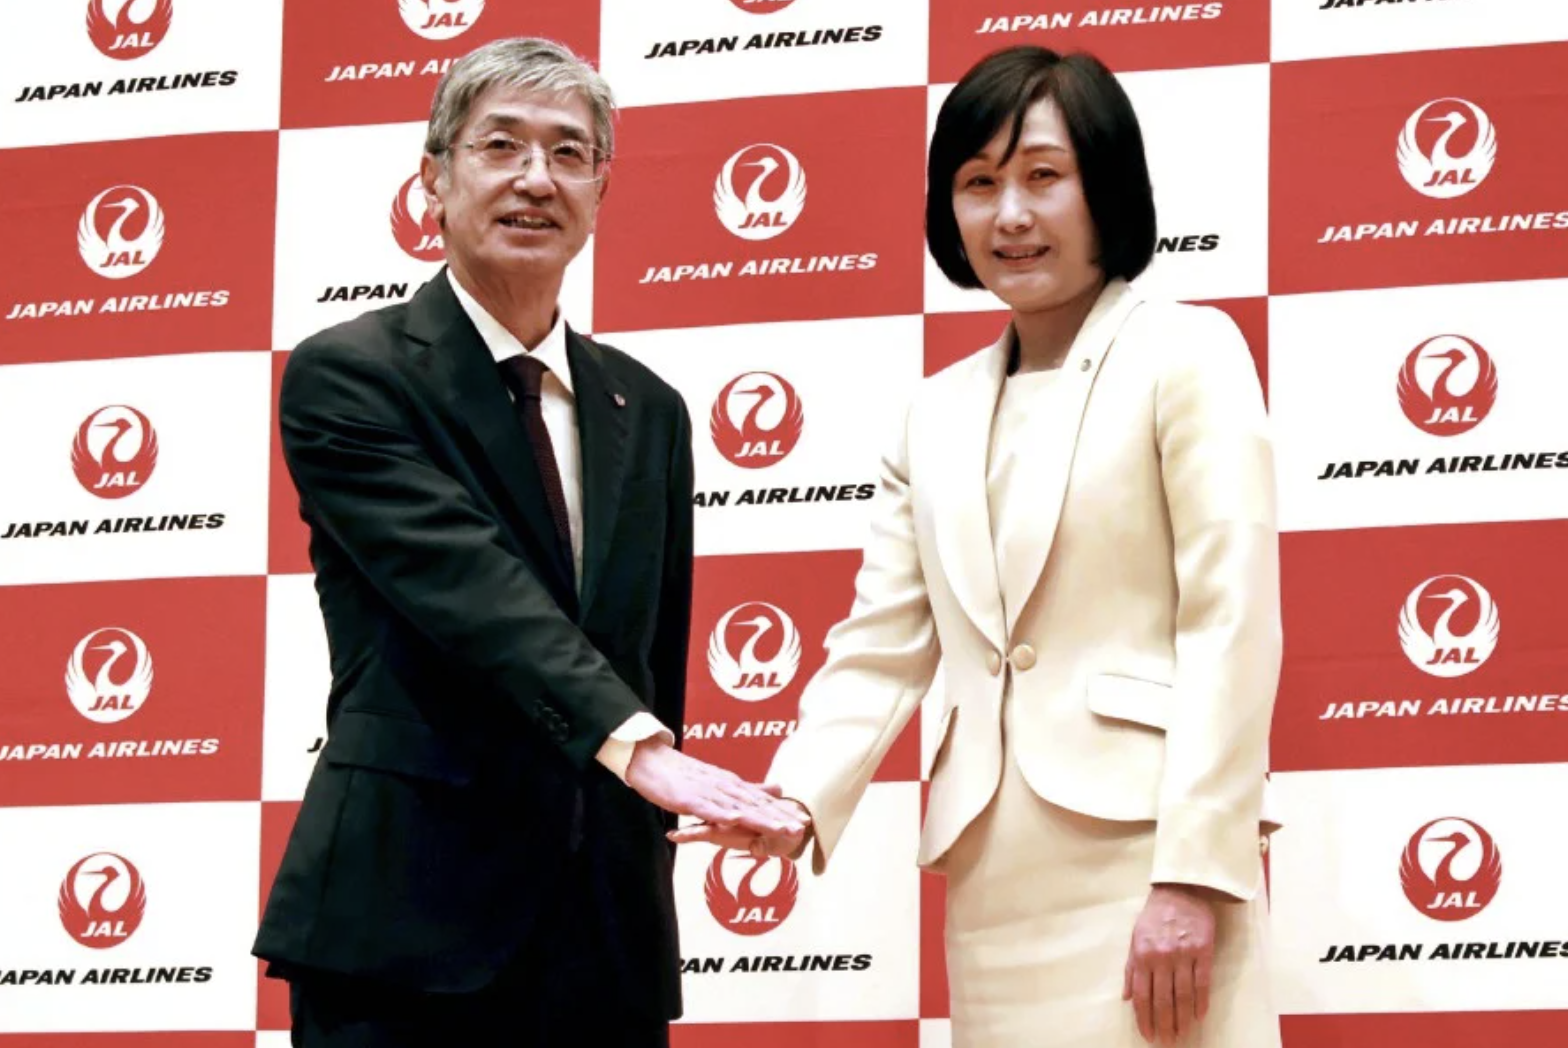 Le nouveau PDG de Japan Airlines veut que le Japon ne soit pas surpris lorsque des femmes deviennent présidentes